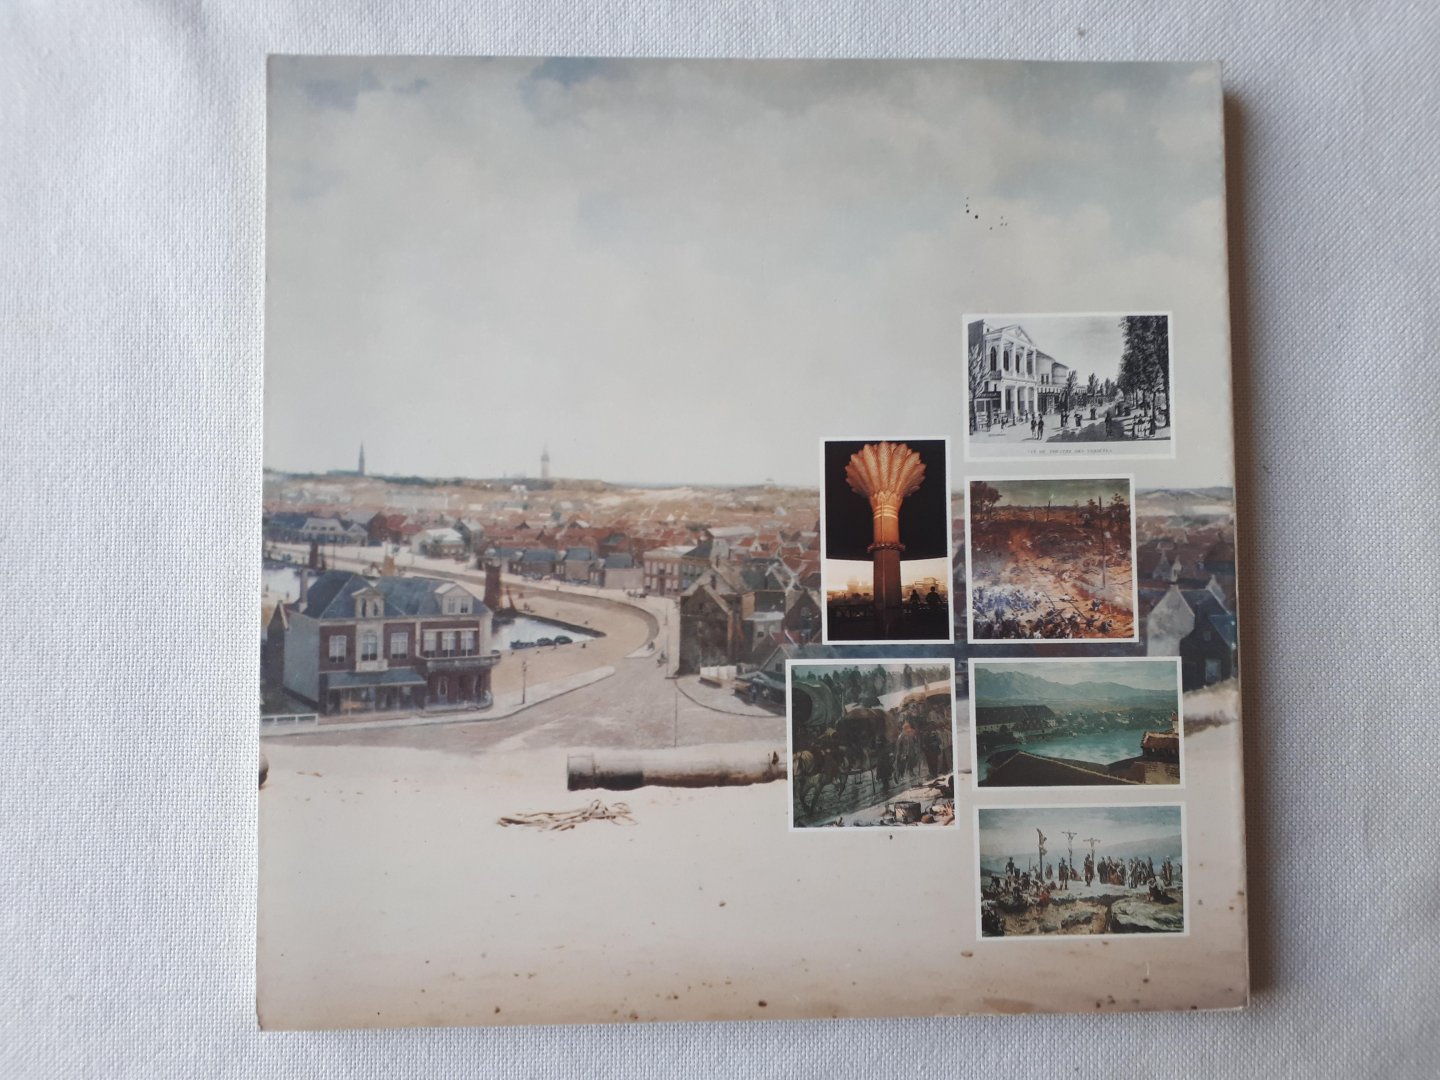 Zoetmulder, Paul A. - Het Panorama Fenomeen. Panorama Mesdag 1881-1981